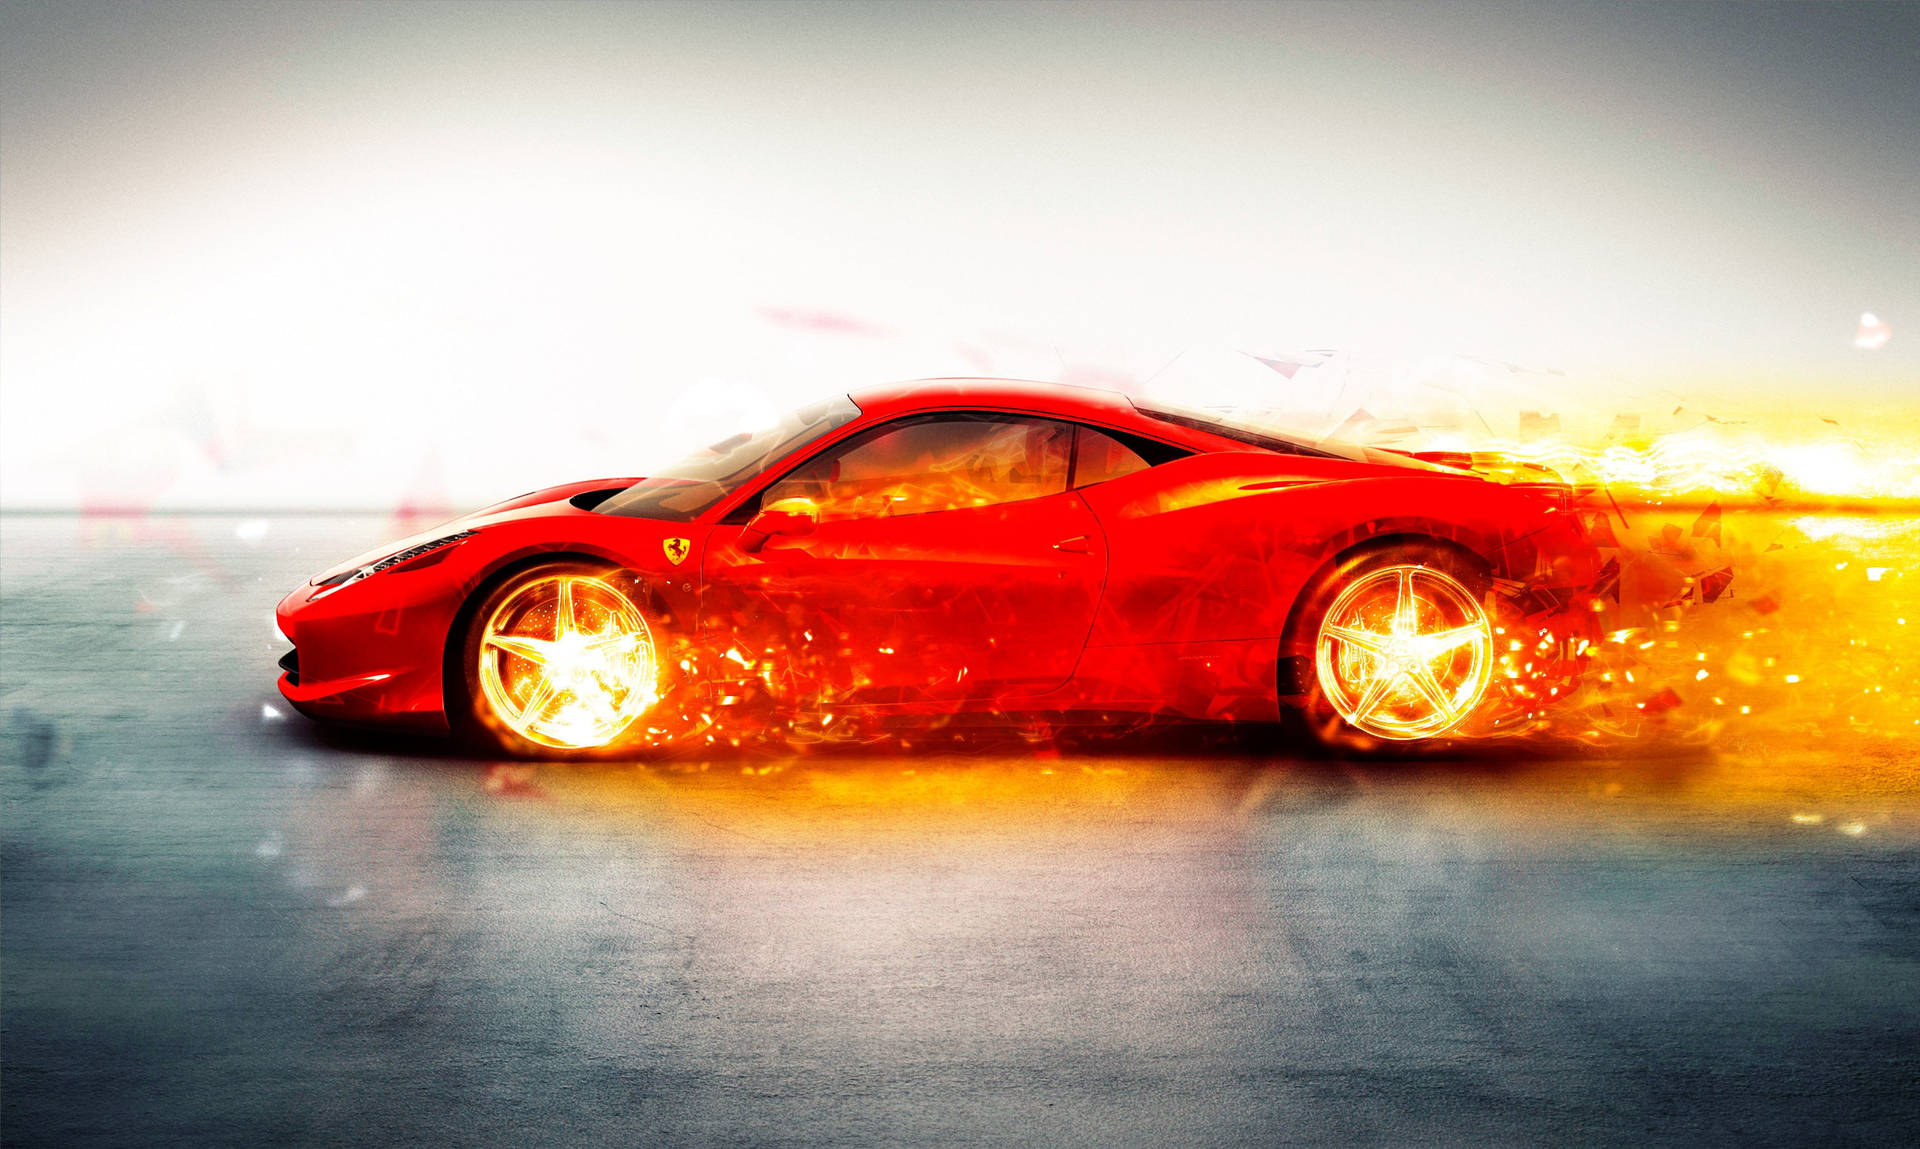 Red Fire Car Ferrari Background